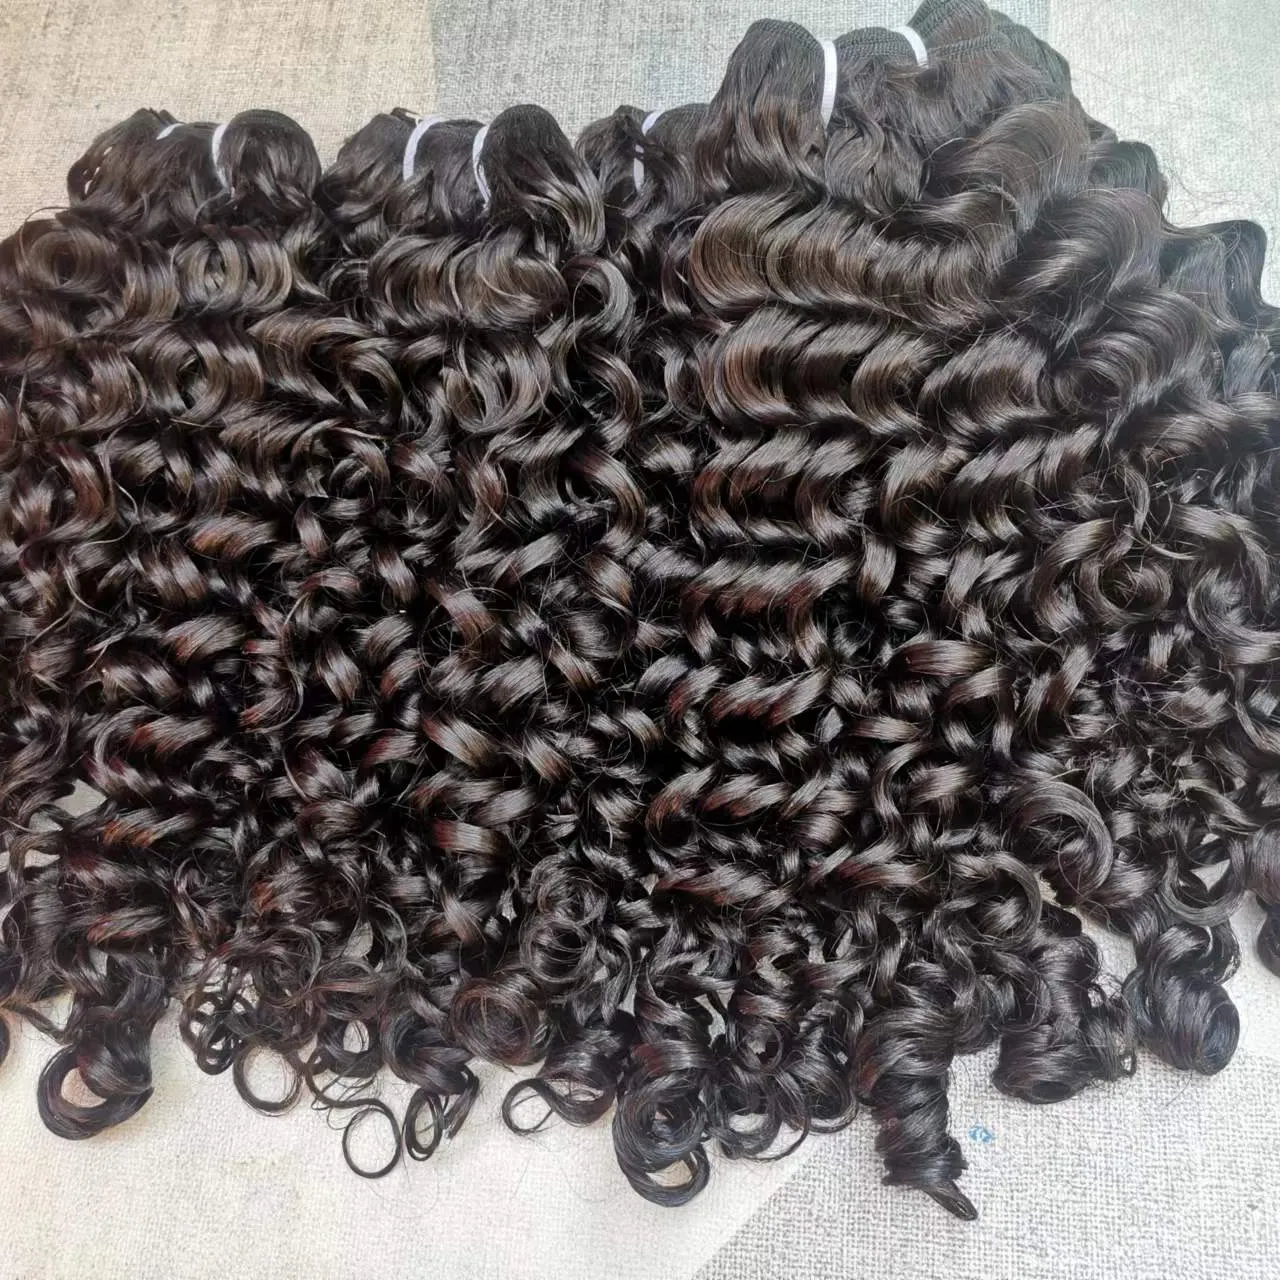 नि: शुल्क शिपिंग वियतनामी बाल प्राकृतिक काले रंग डबल खींचा कच्चे बाल, बर्मी कच्चे घुंघराले मानव बाल विक्रेता